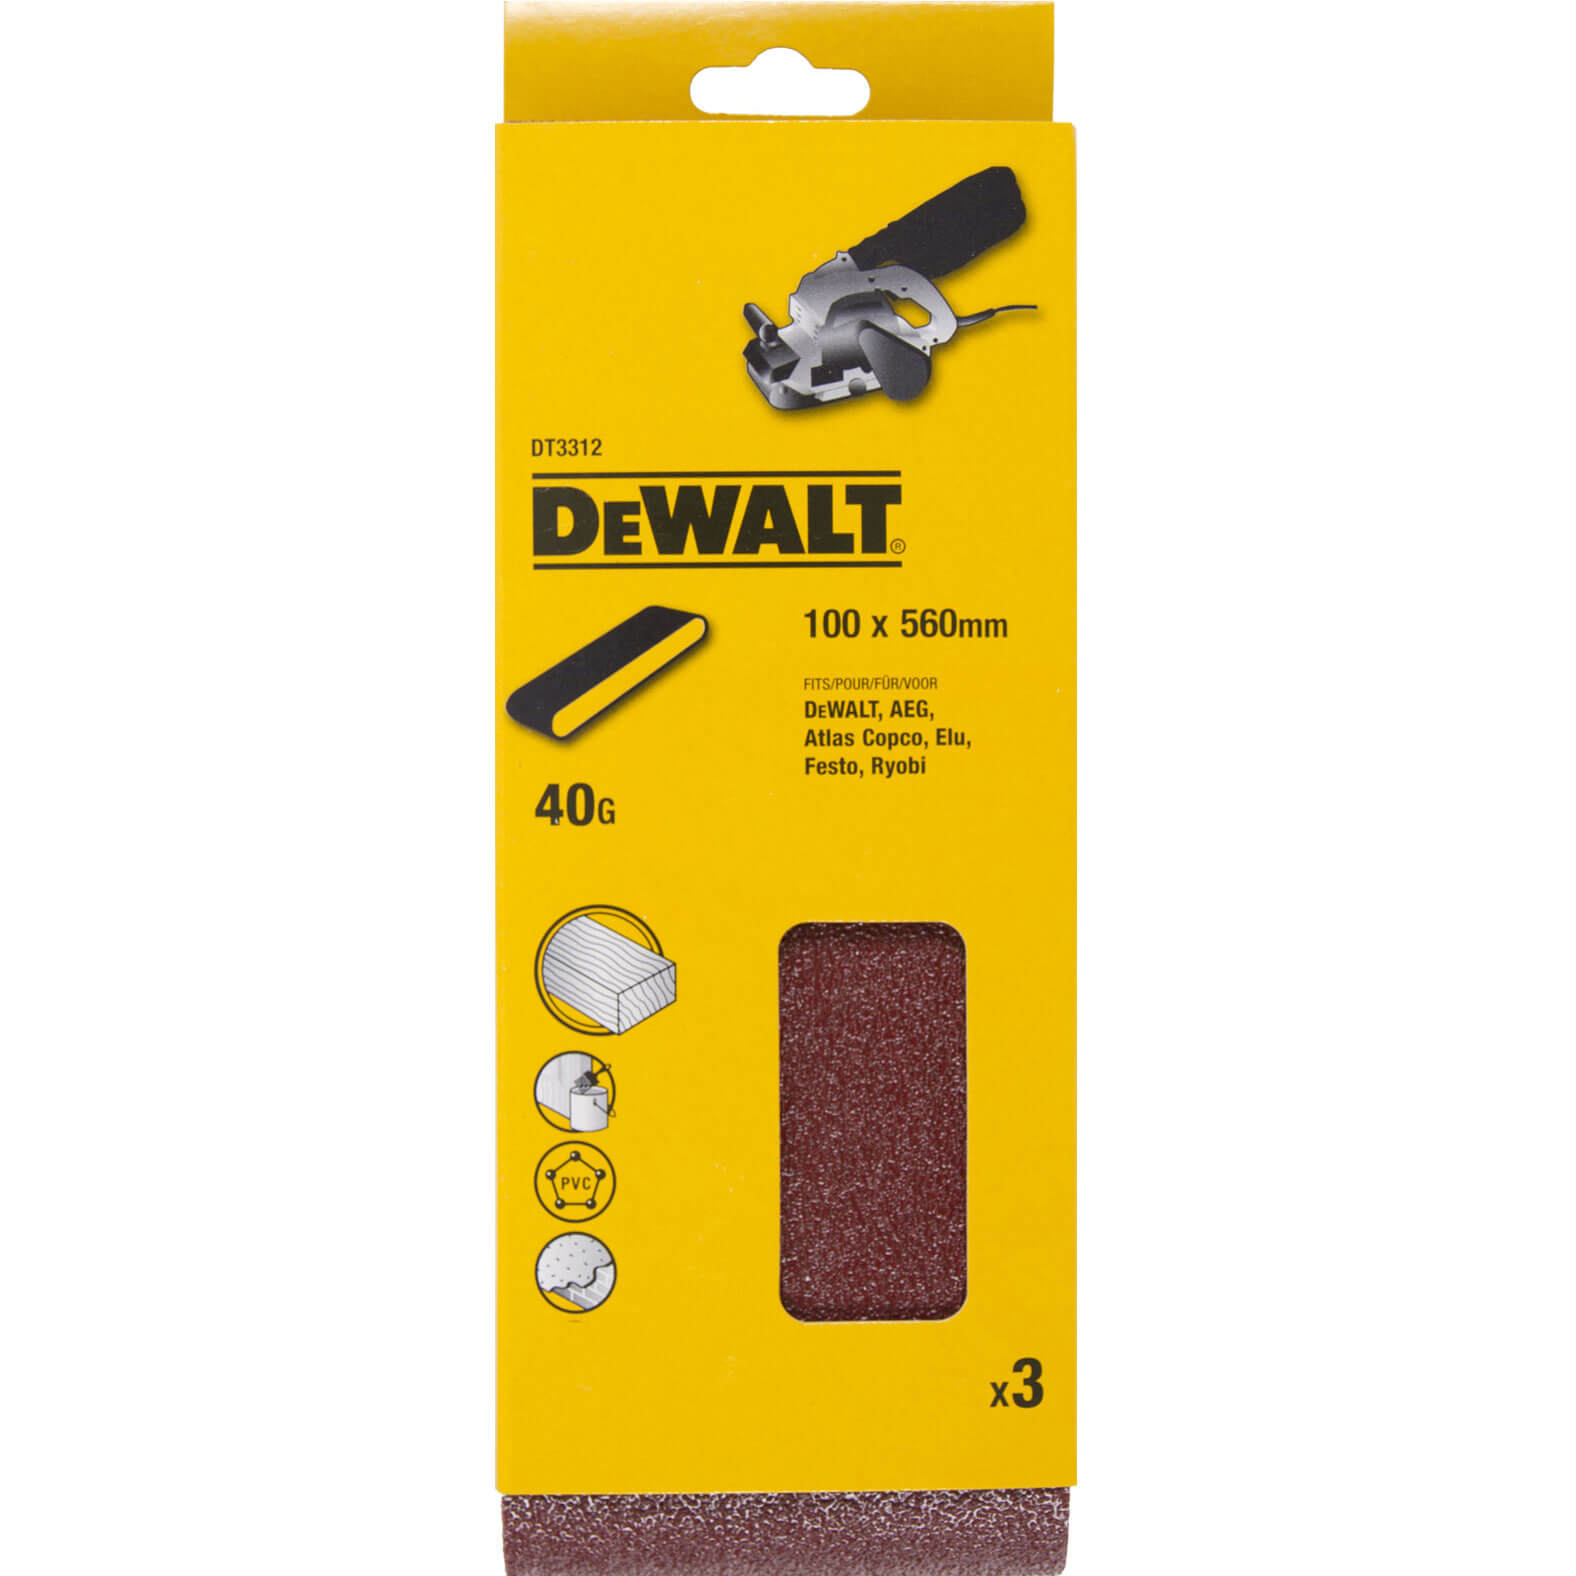 Image of DeWalt 100 x 560mm Sanding Belts 100mm x 560mm 40g Pack of 3